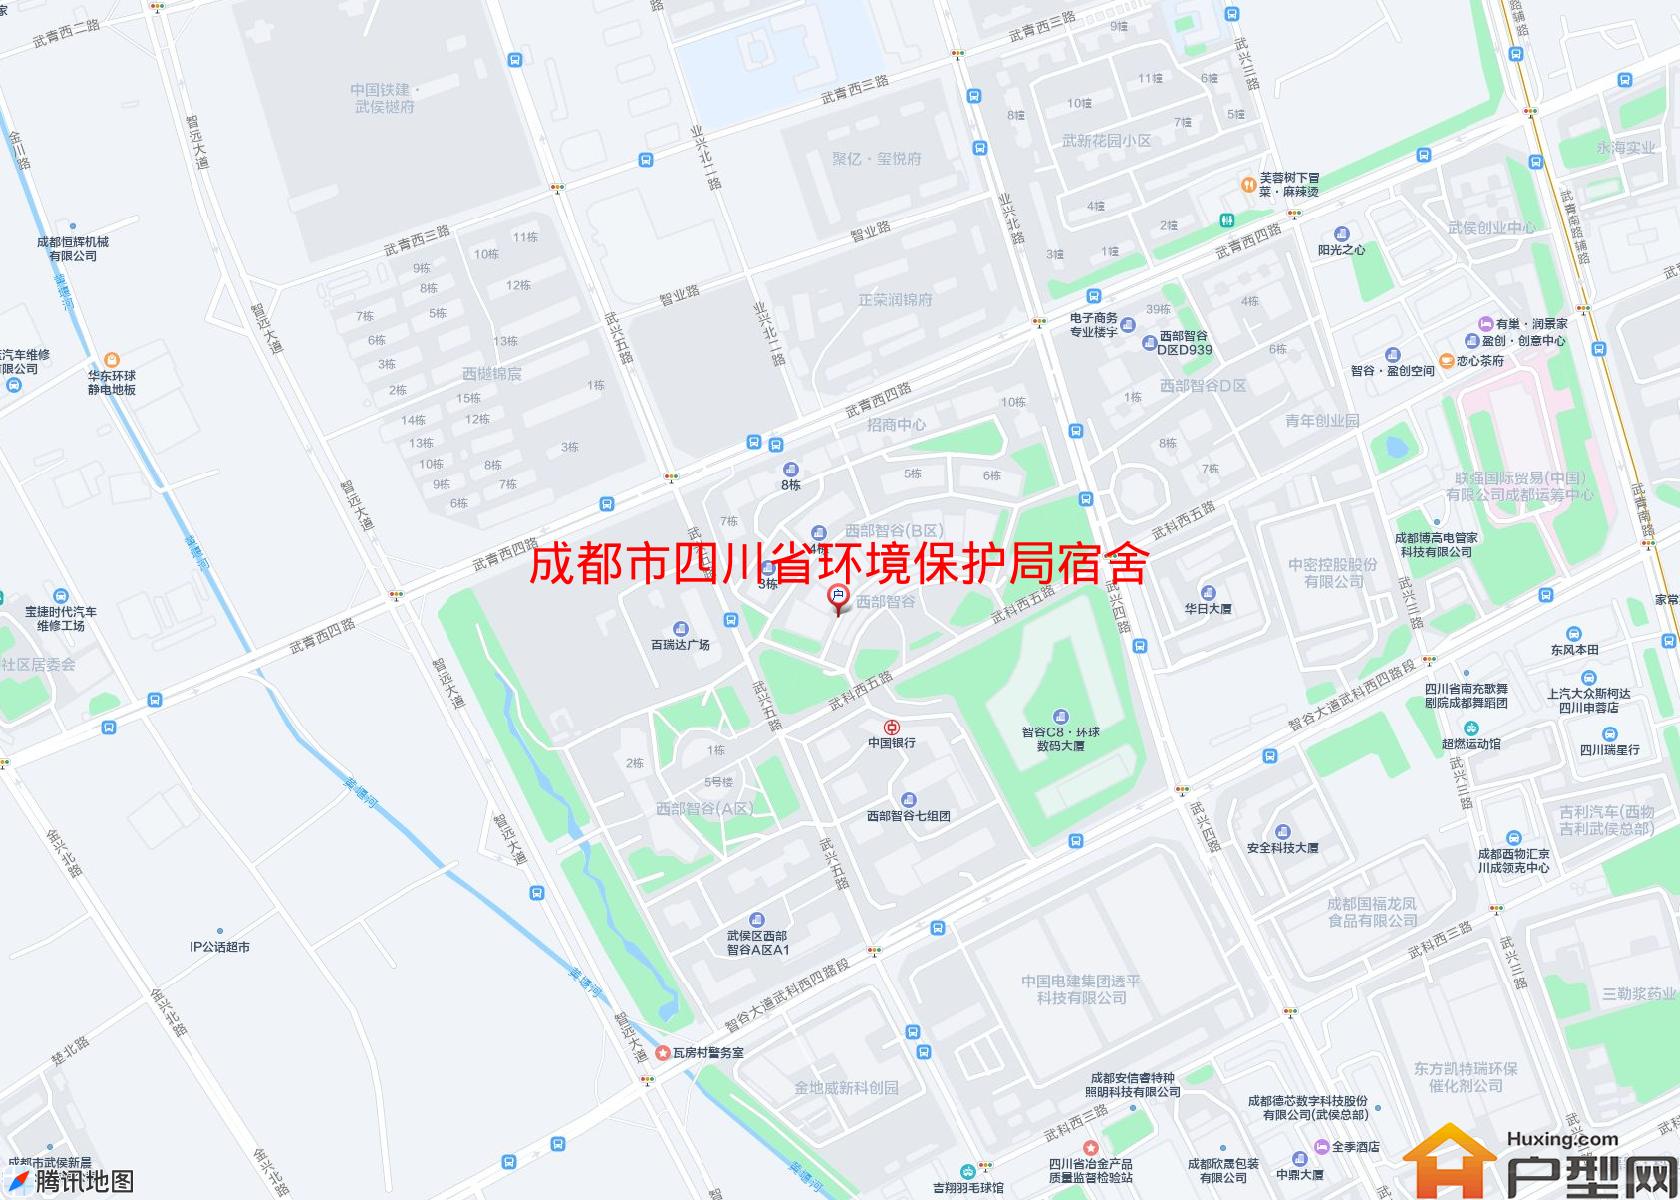 四川省环境保护局宿舍小区 - 户型网